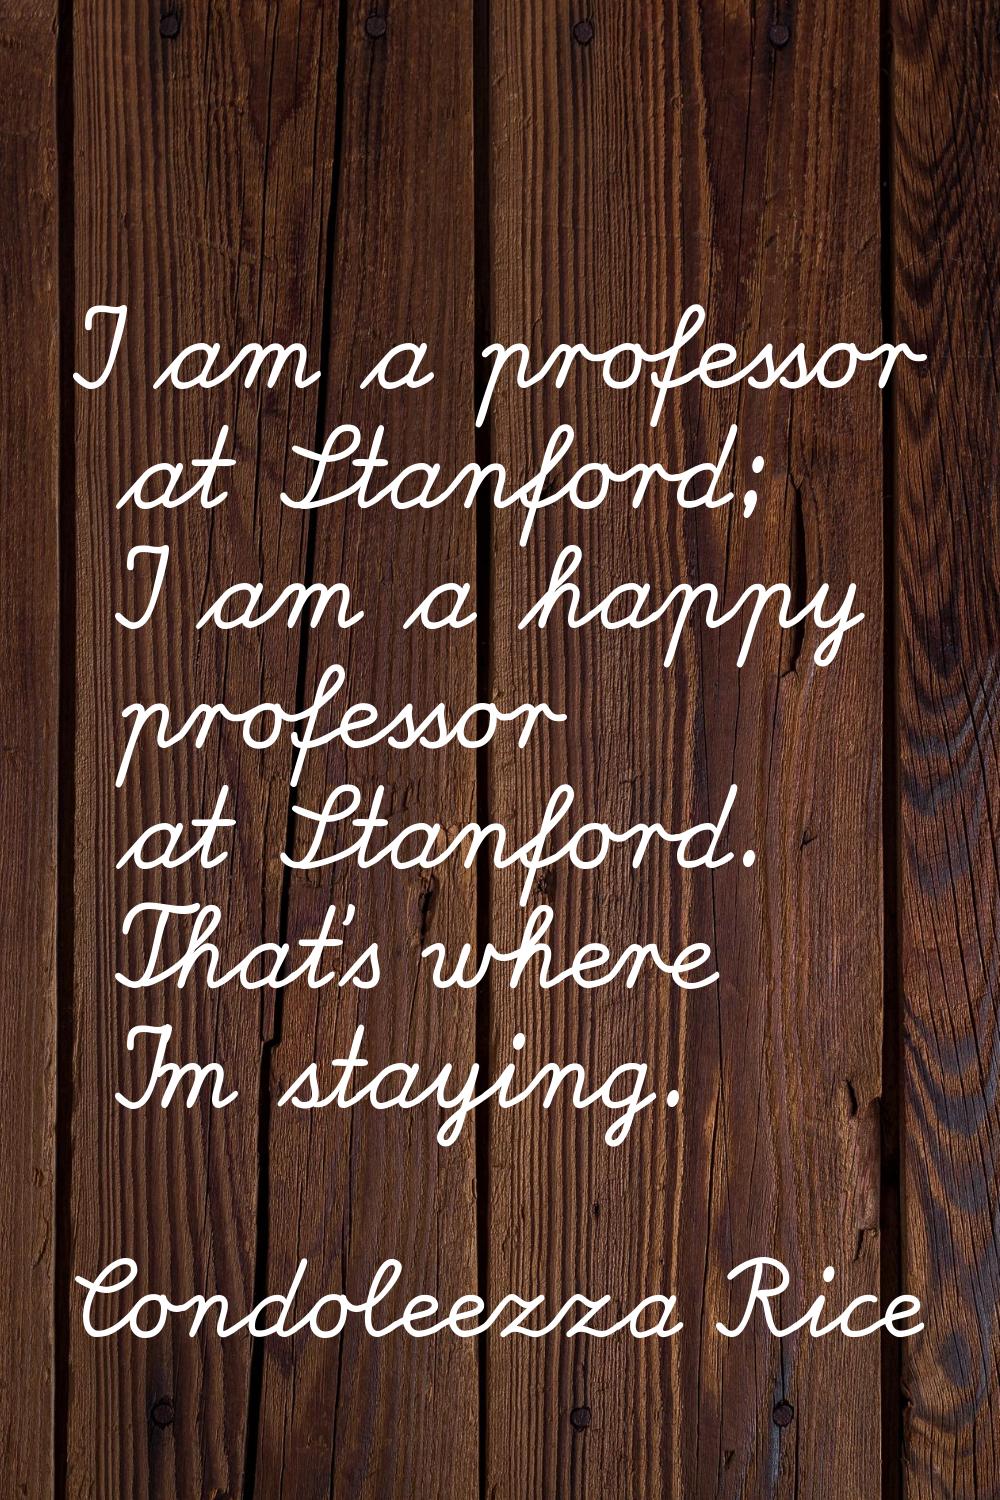 I am a professor at Stanford; I am a happy professor at Stanford. That's where I'm staying.